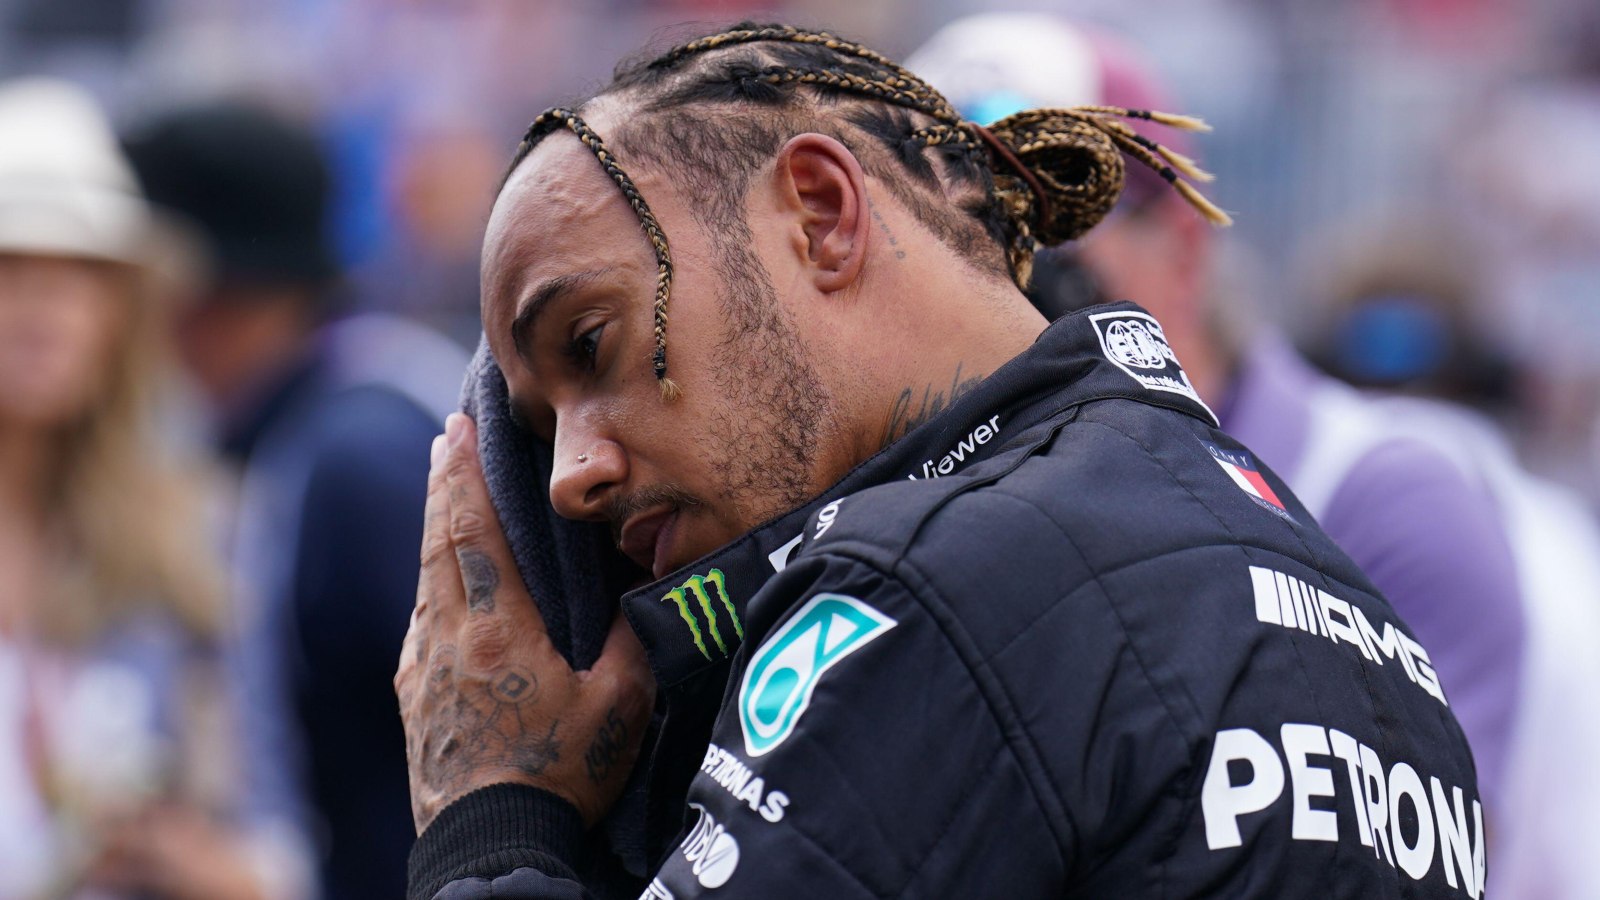 Lewis Hamilton wipes his forehead. Miami, May 2022